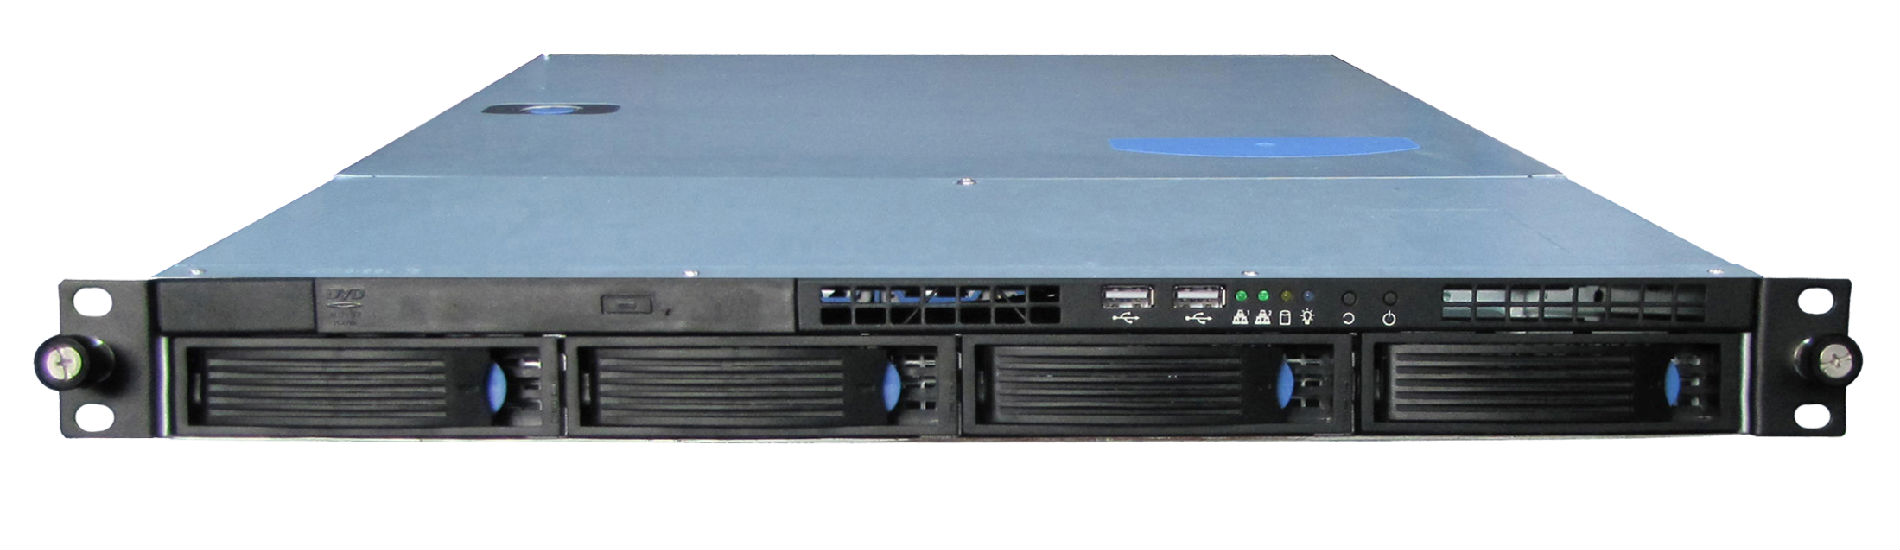 企业级网络存储系统-SP3004